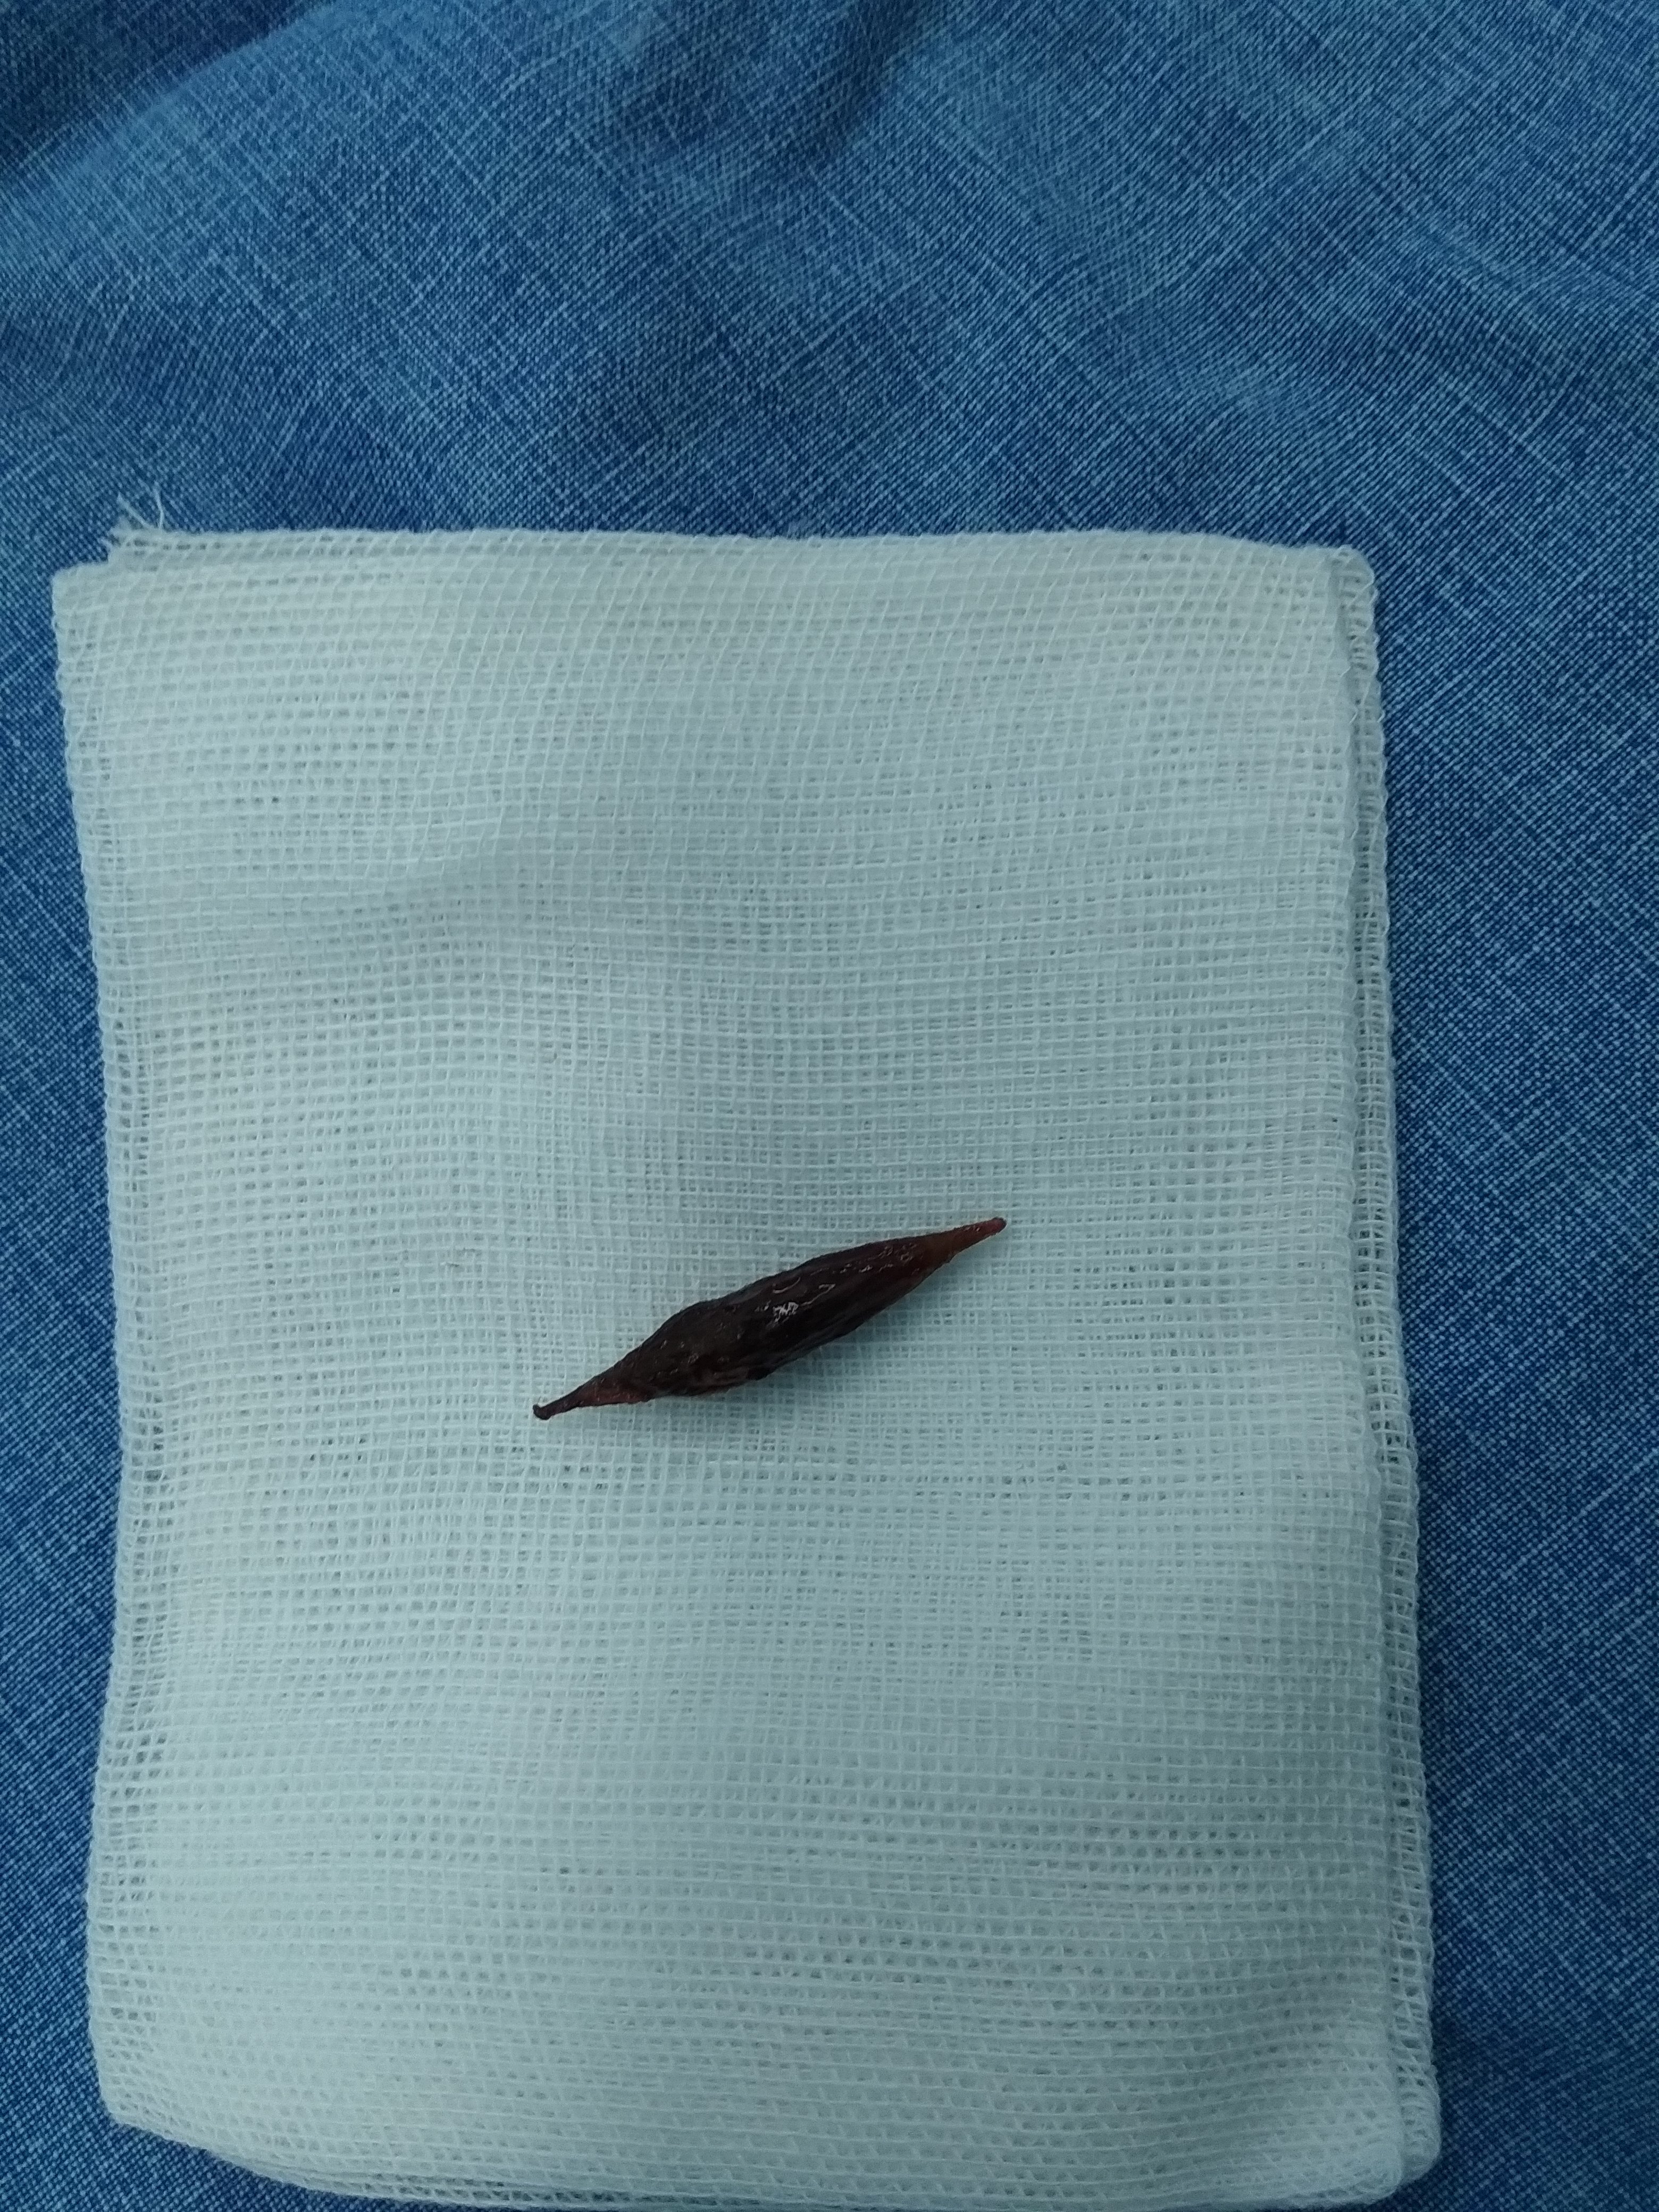 10厘米长的异物肛门图片